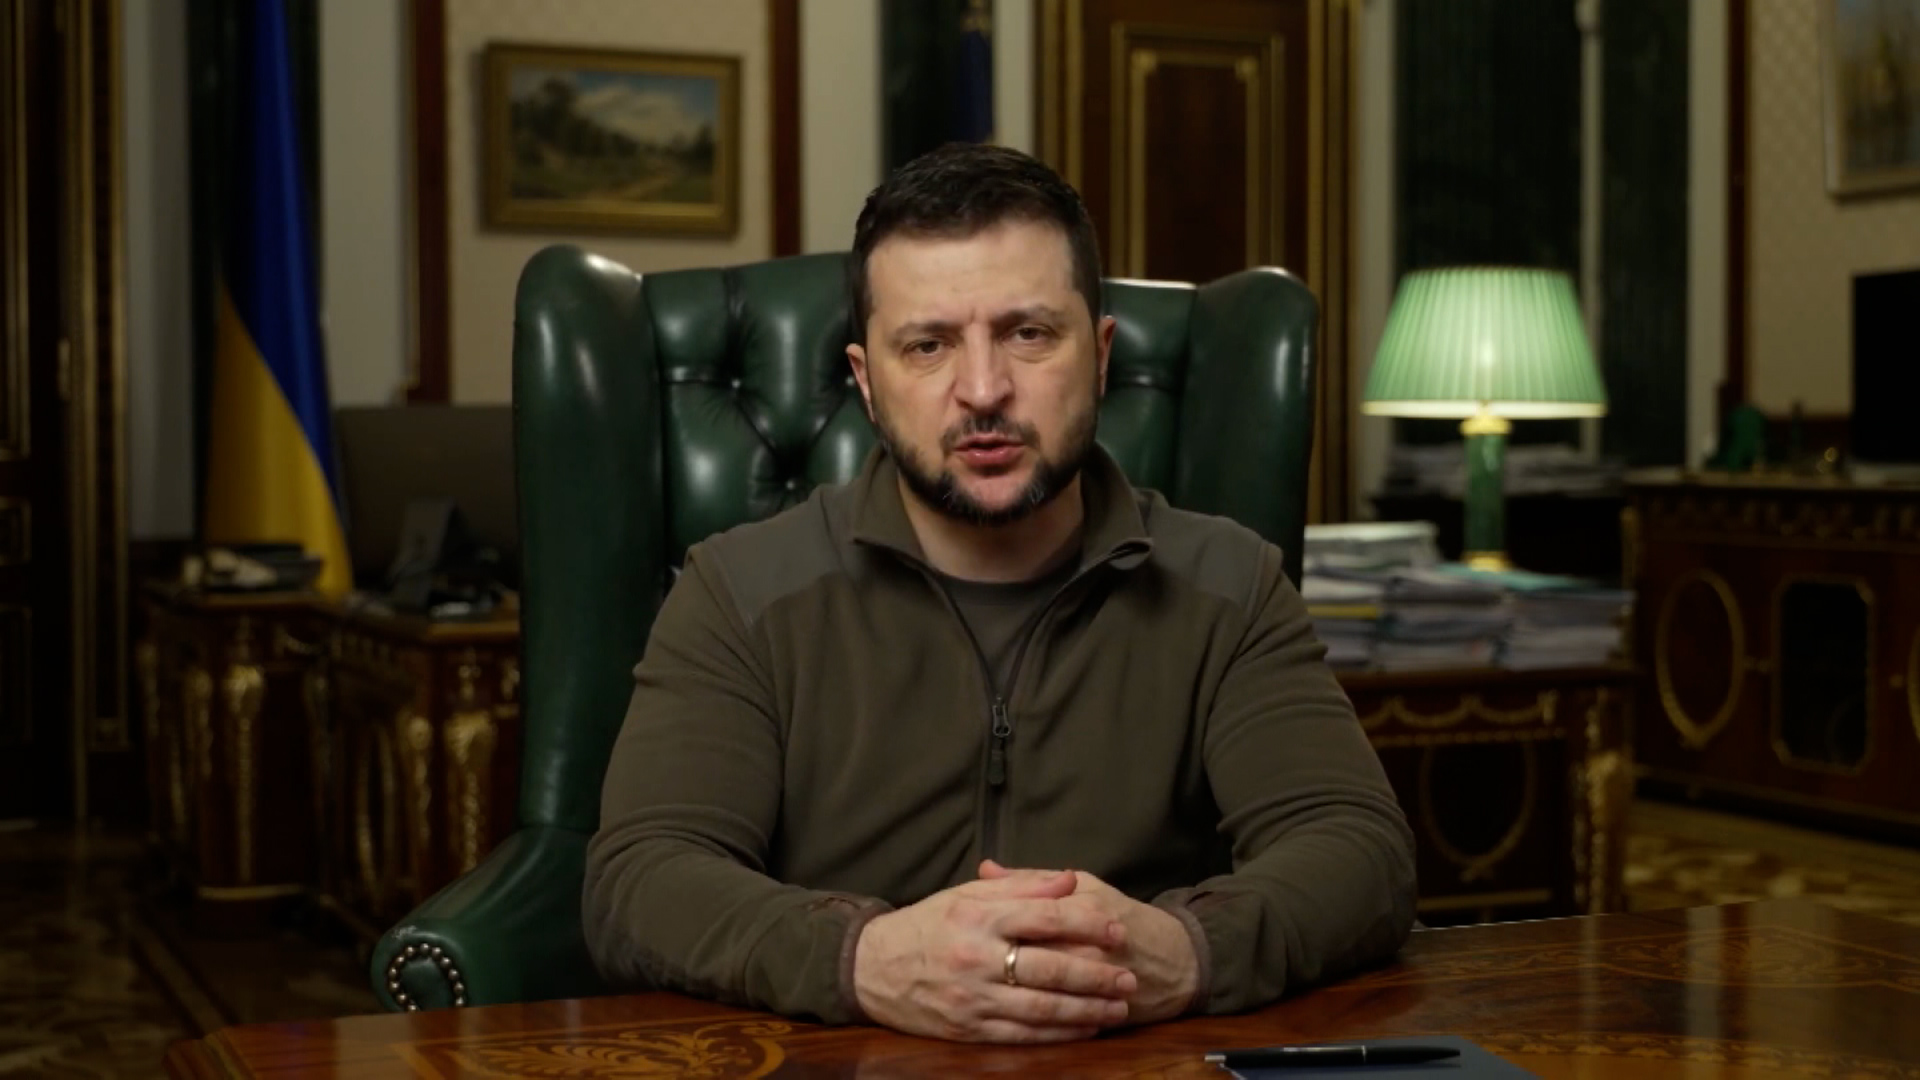 (Office of the President of Ukraine/YouTube)